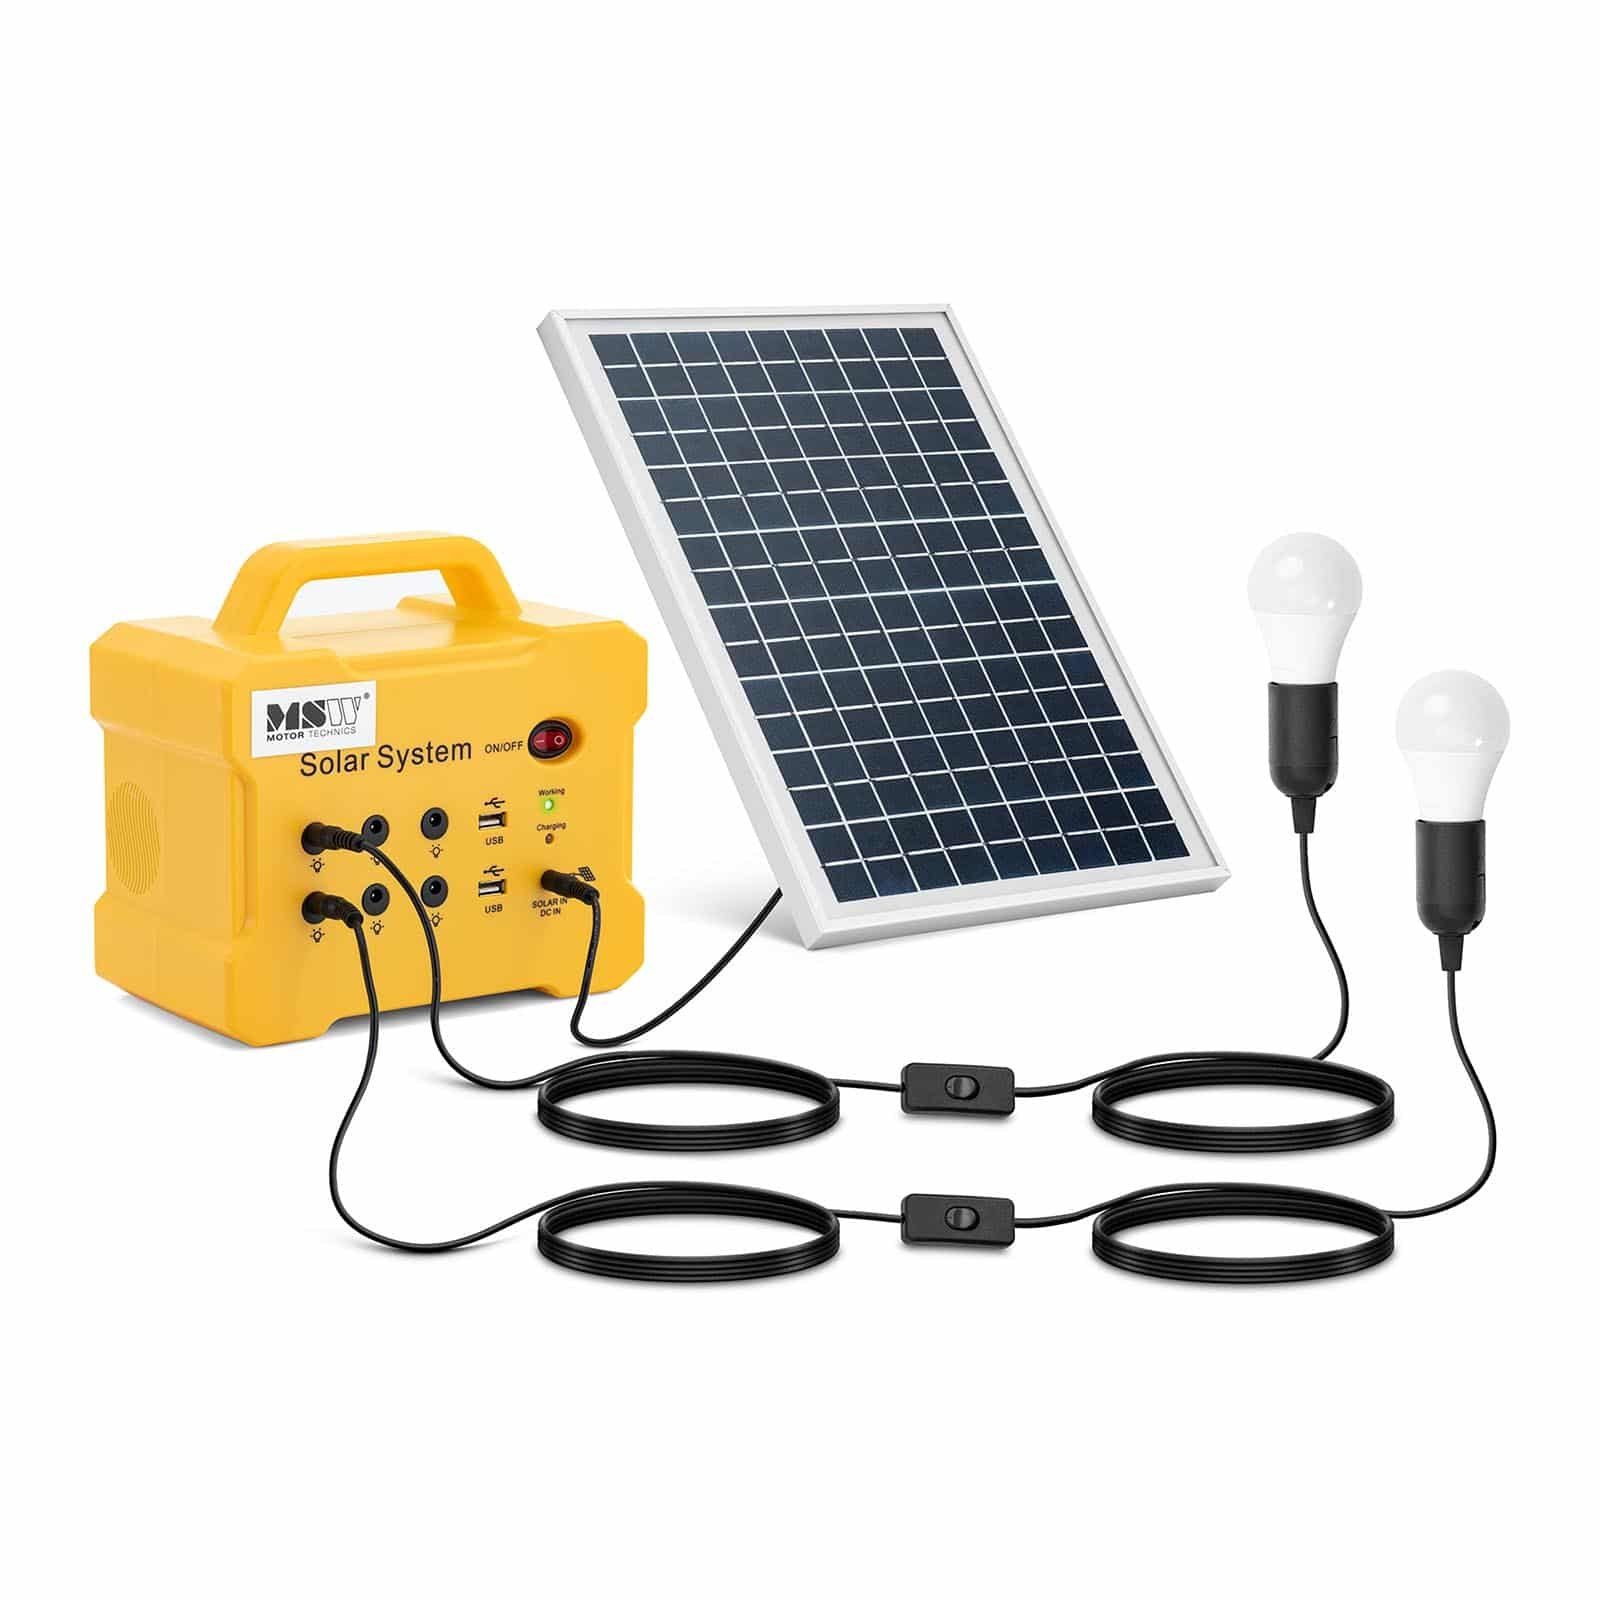 x W 6 12 mit 2 (DC) 2 Solarladeregler 10 x V MSW + LED-Leuchten Solarpanel Powerstation